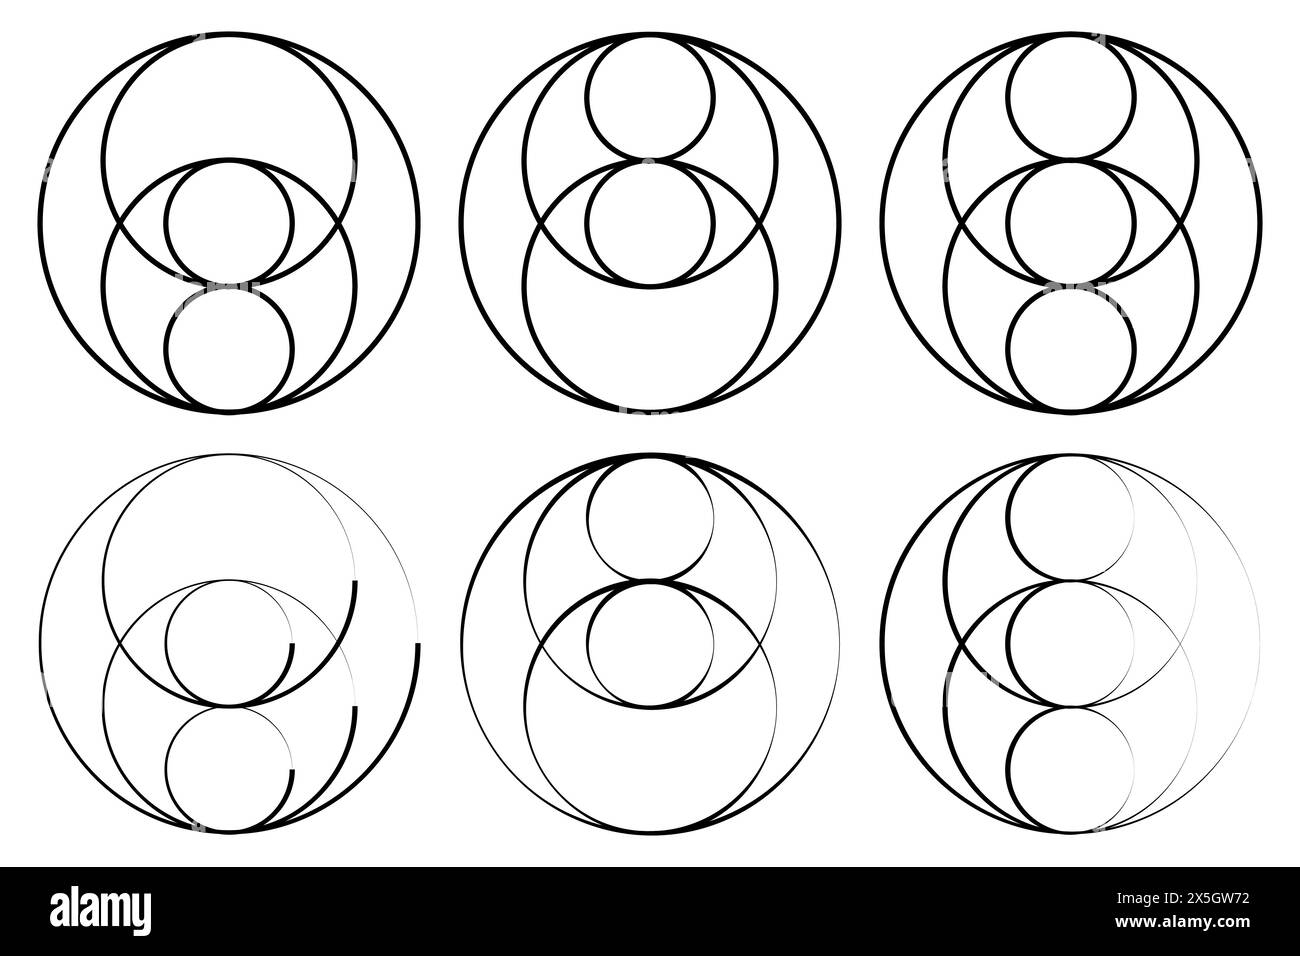 Géométrie de vesica piscis à l'intérieur des lignes cercles illustration vectorielle. Illustration de Vecteur